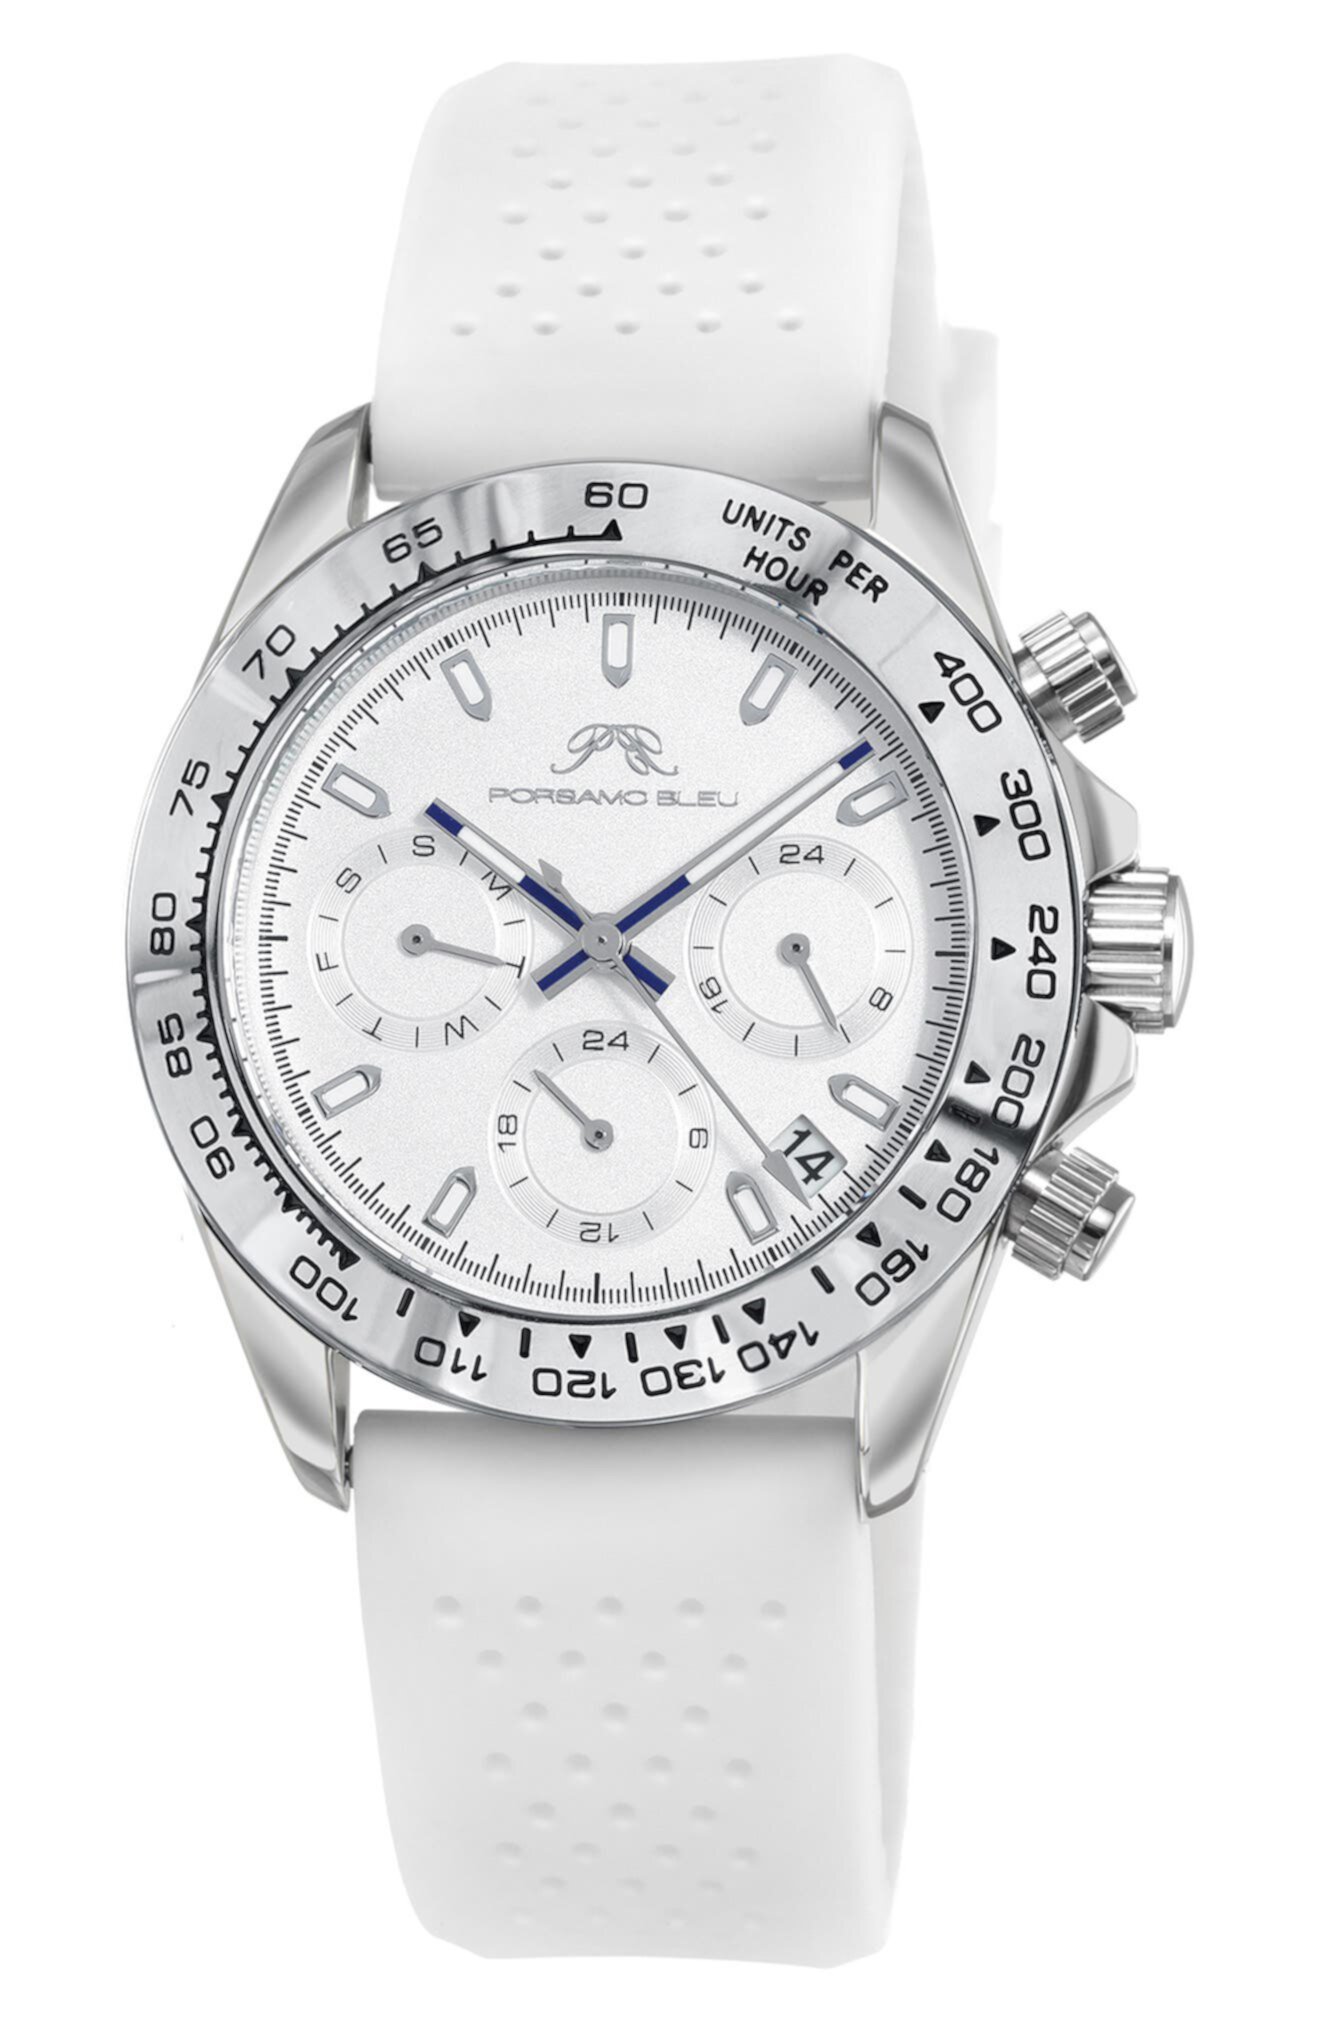 Женские часы Alexis Chronograph Sport, белые силиконовые, 37 мм Porsamo Bleu